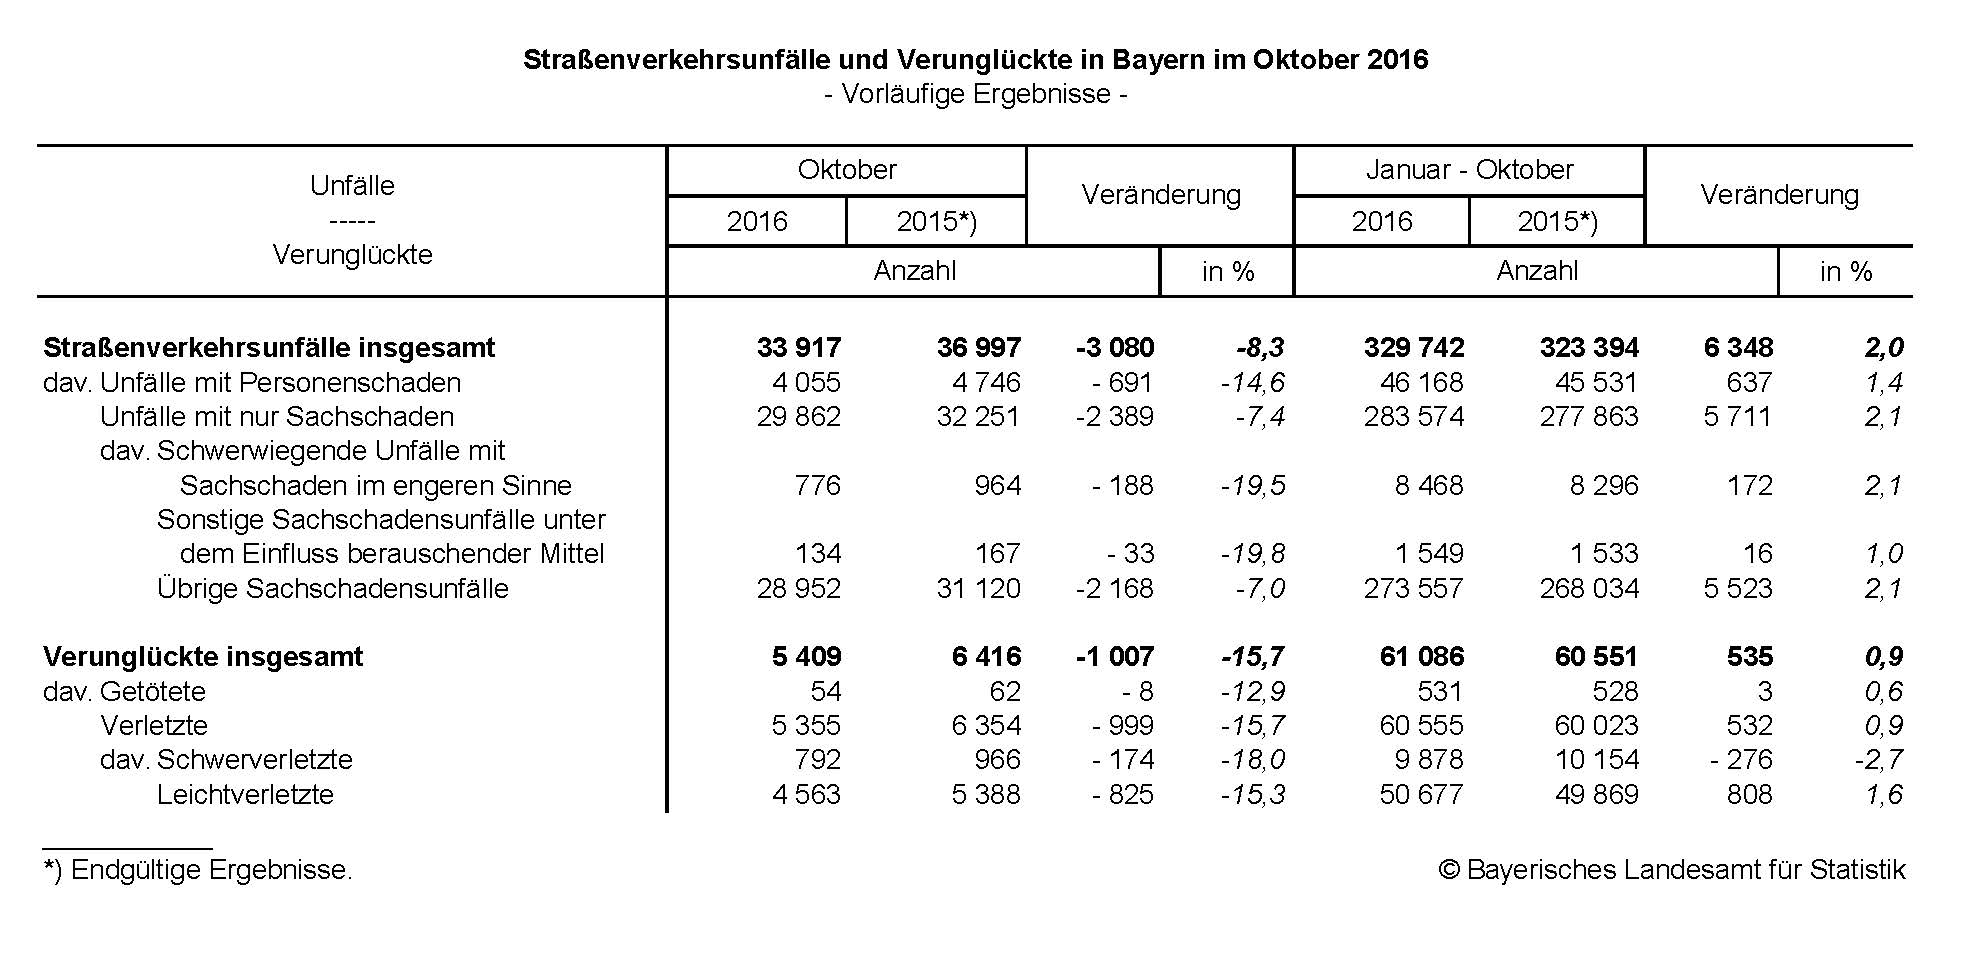 Straßenverkehrsunfälle und Verunglückte in Bayern im Oktober 2016